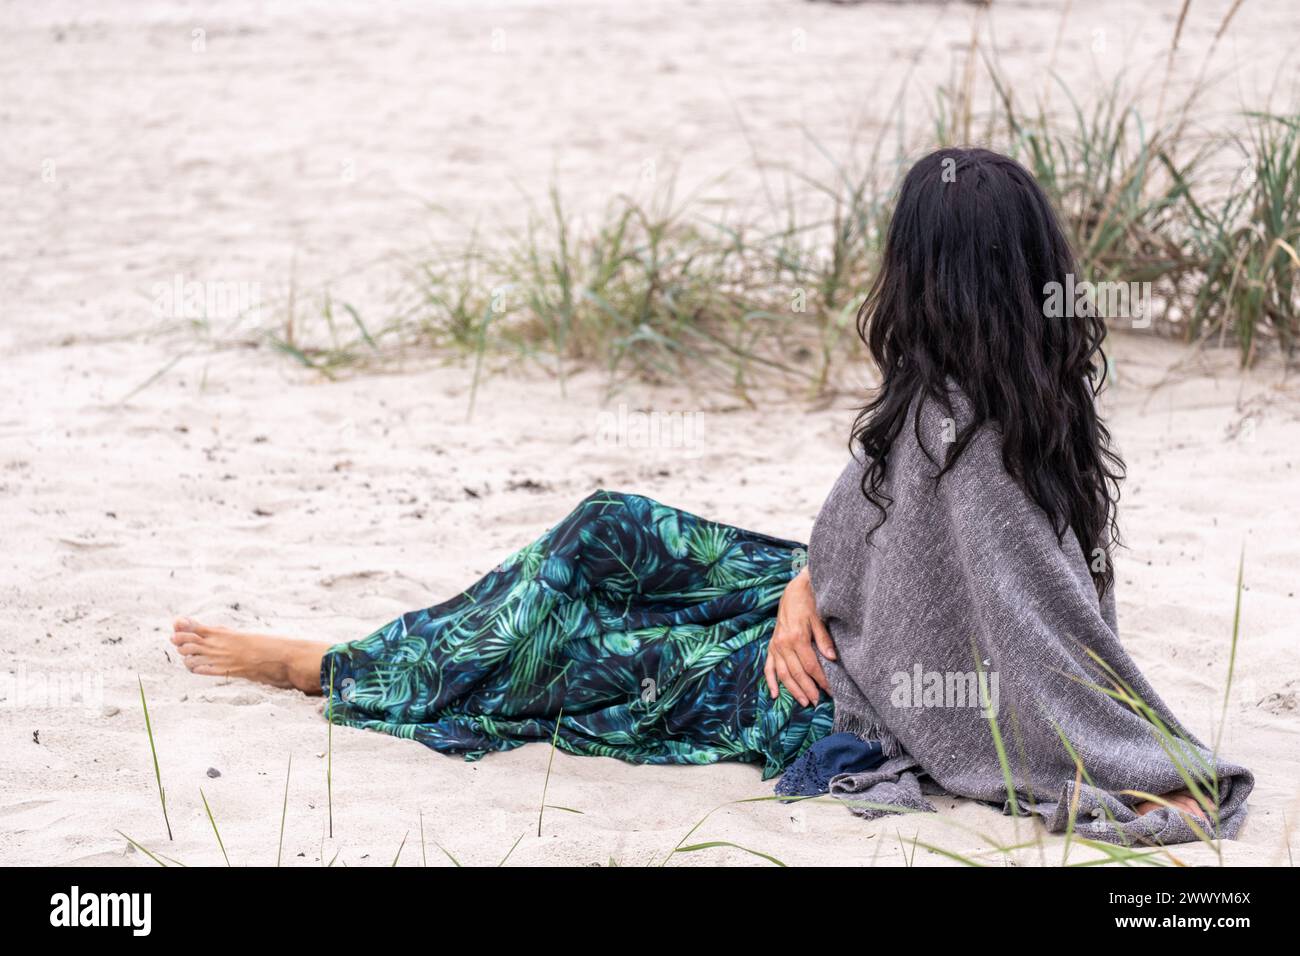 Donna contemplativa seduta sulla spiaggia, il suo sguardo perso nell'orizzonte, incarna un momento di riflessione pacifica ed equilibrio emotivo in mezza vita, come Foto Stock